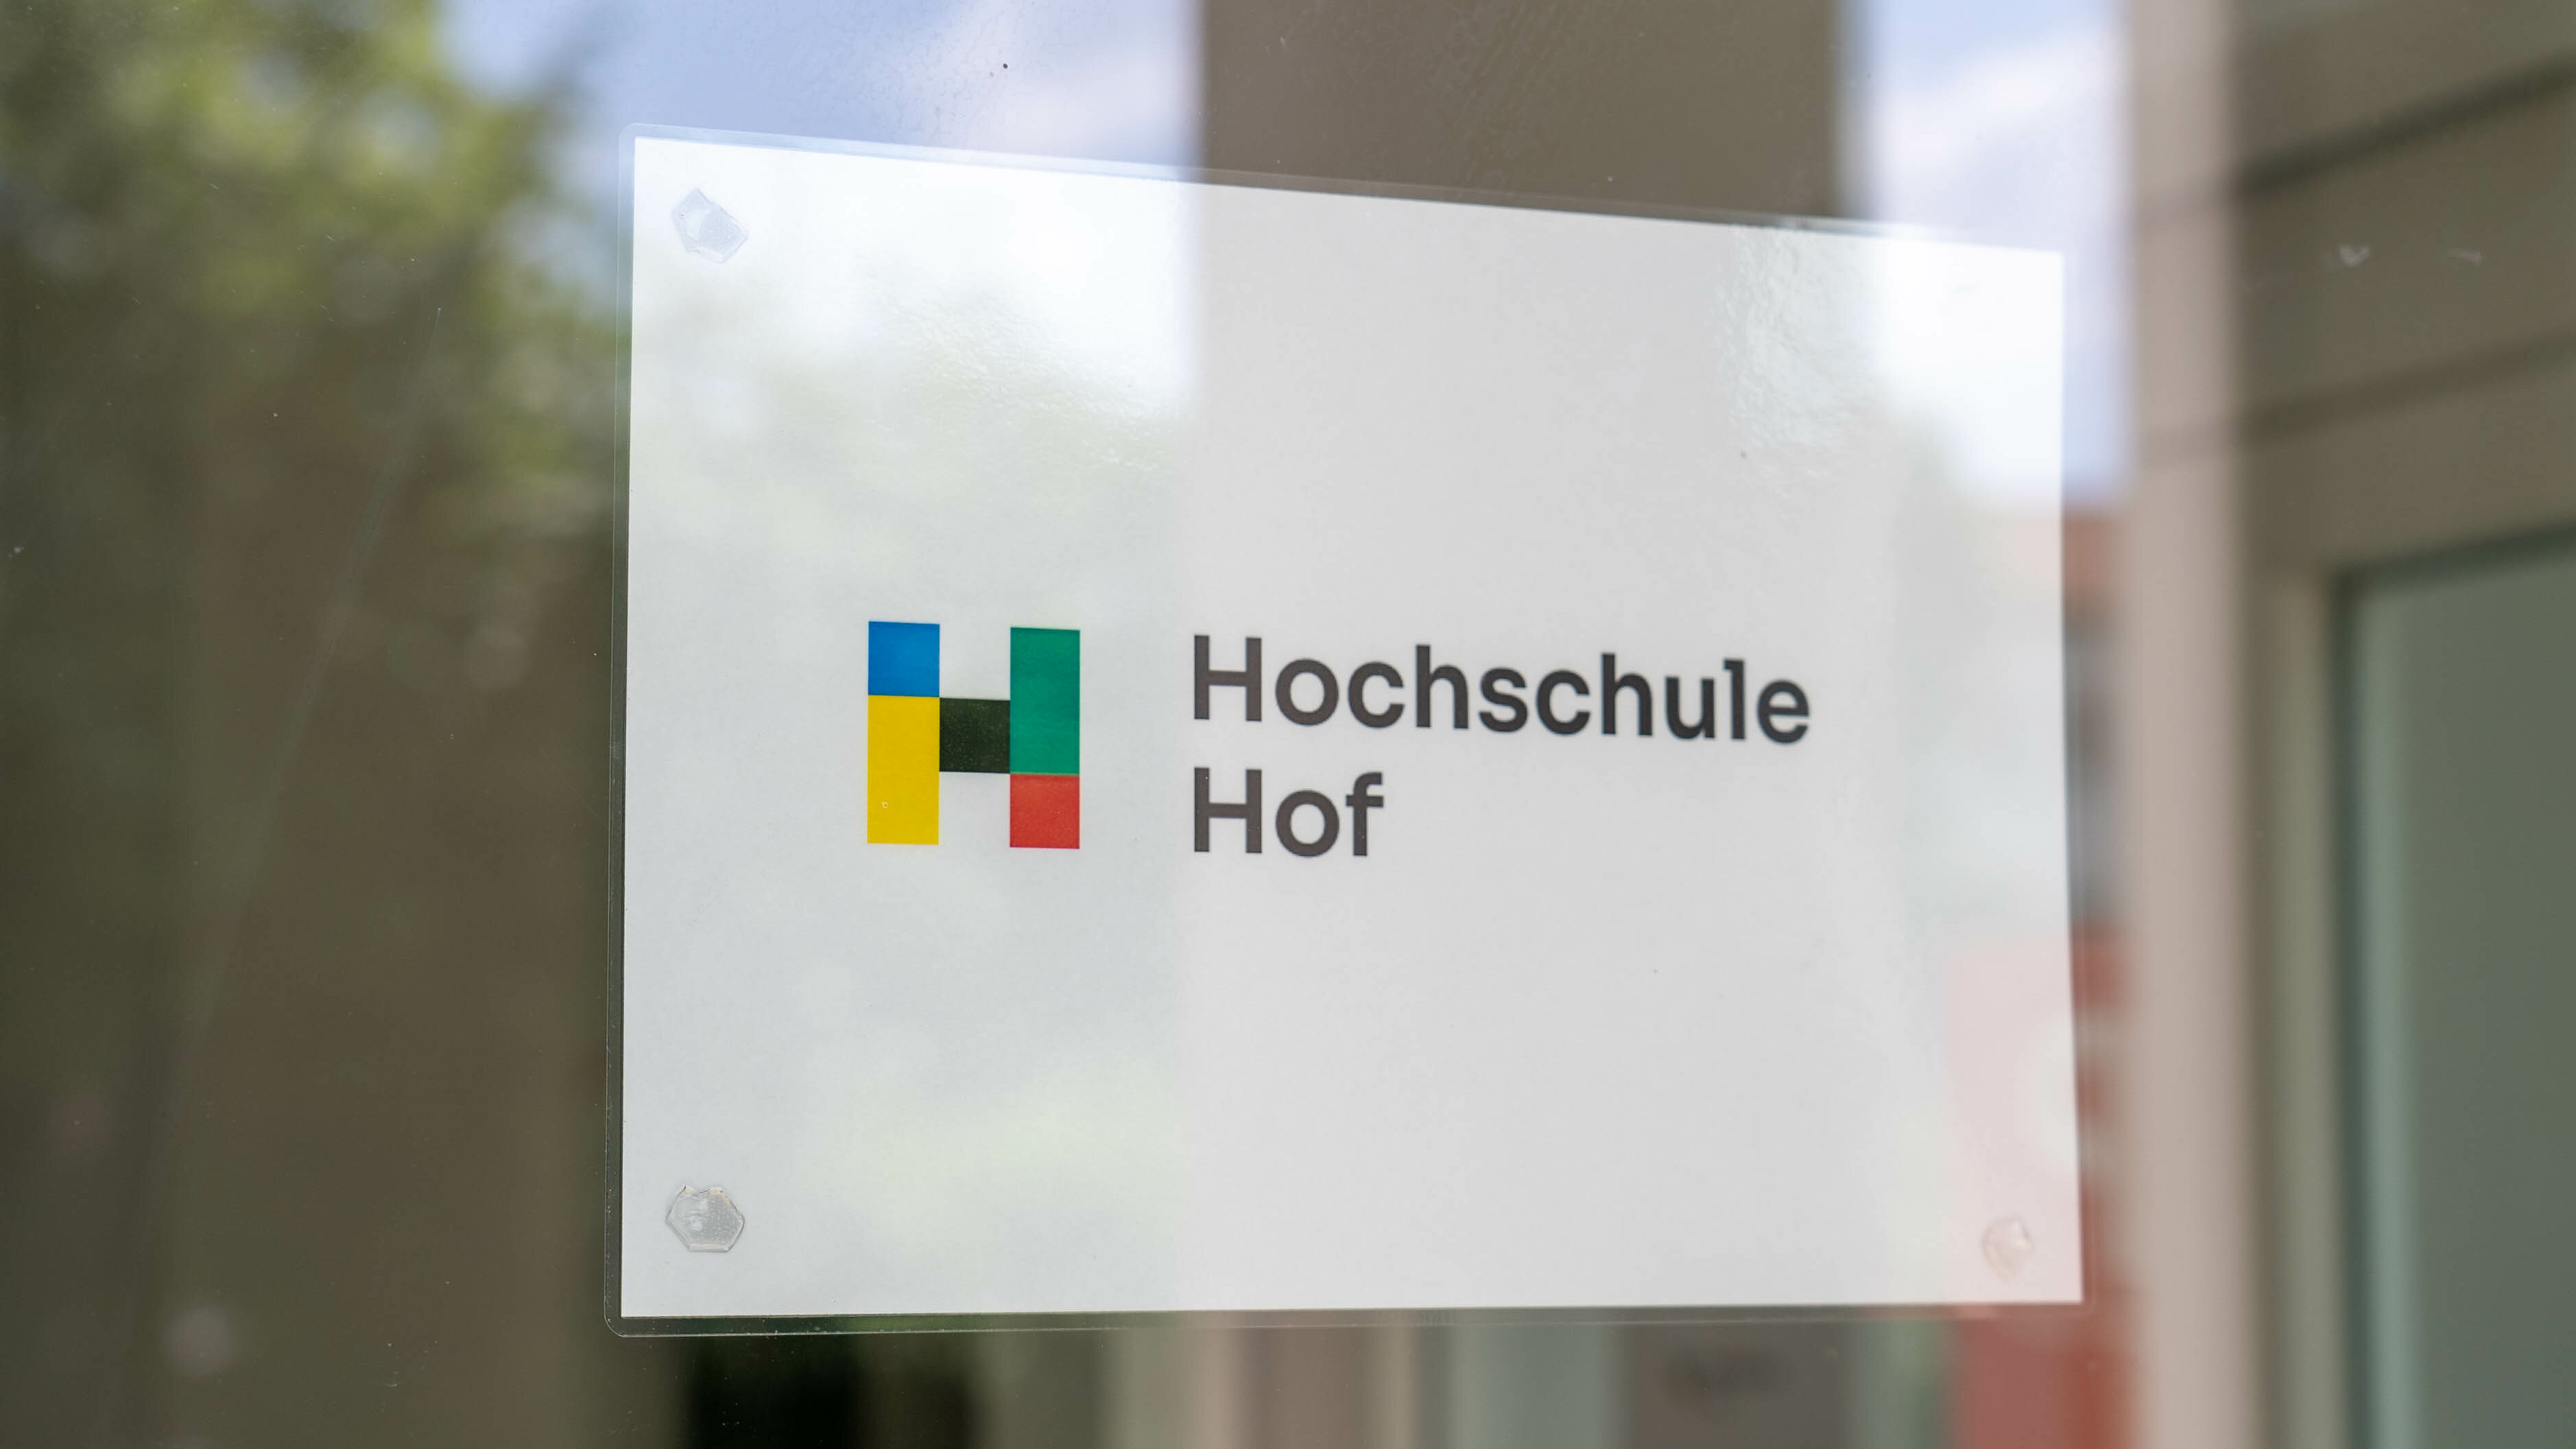 Fensterscheibe mit Logo "Hochschule Hof"